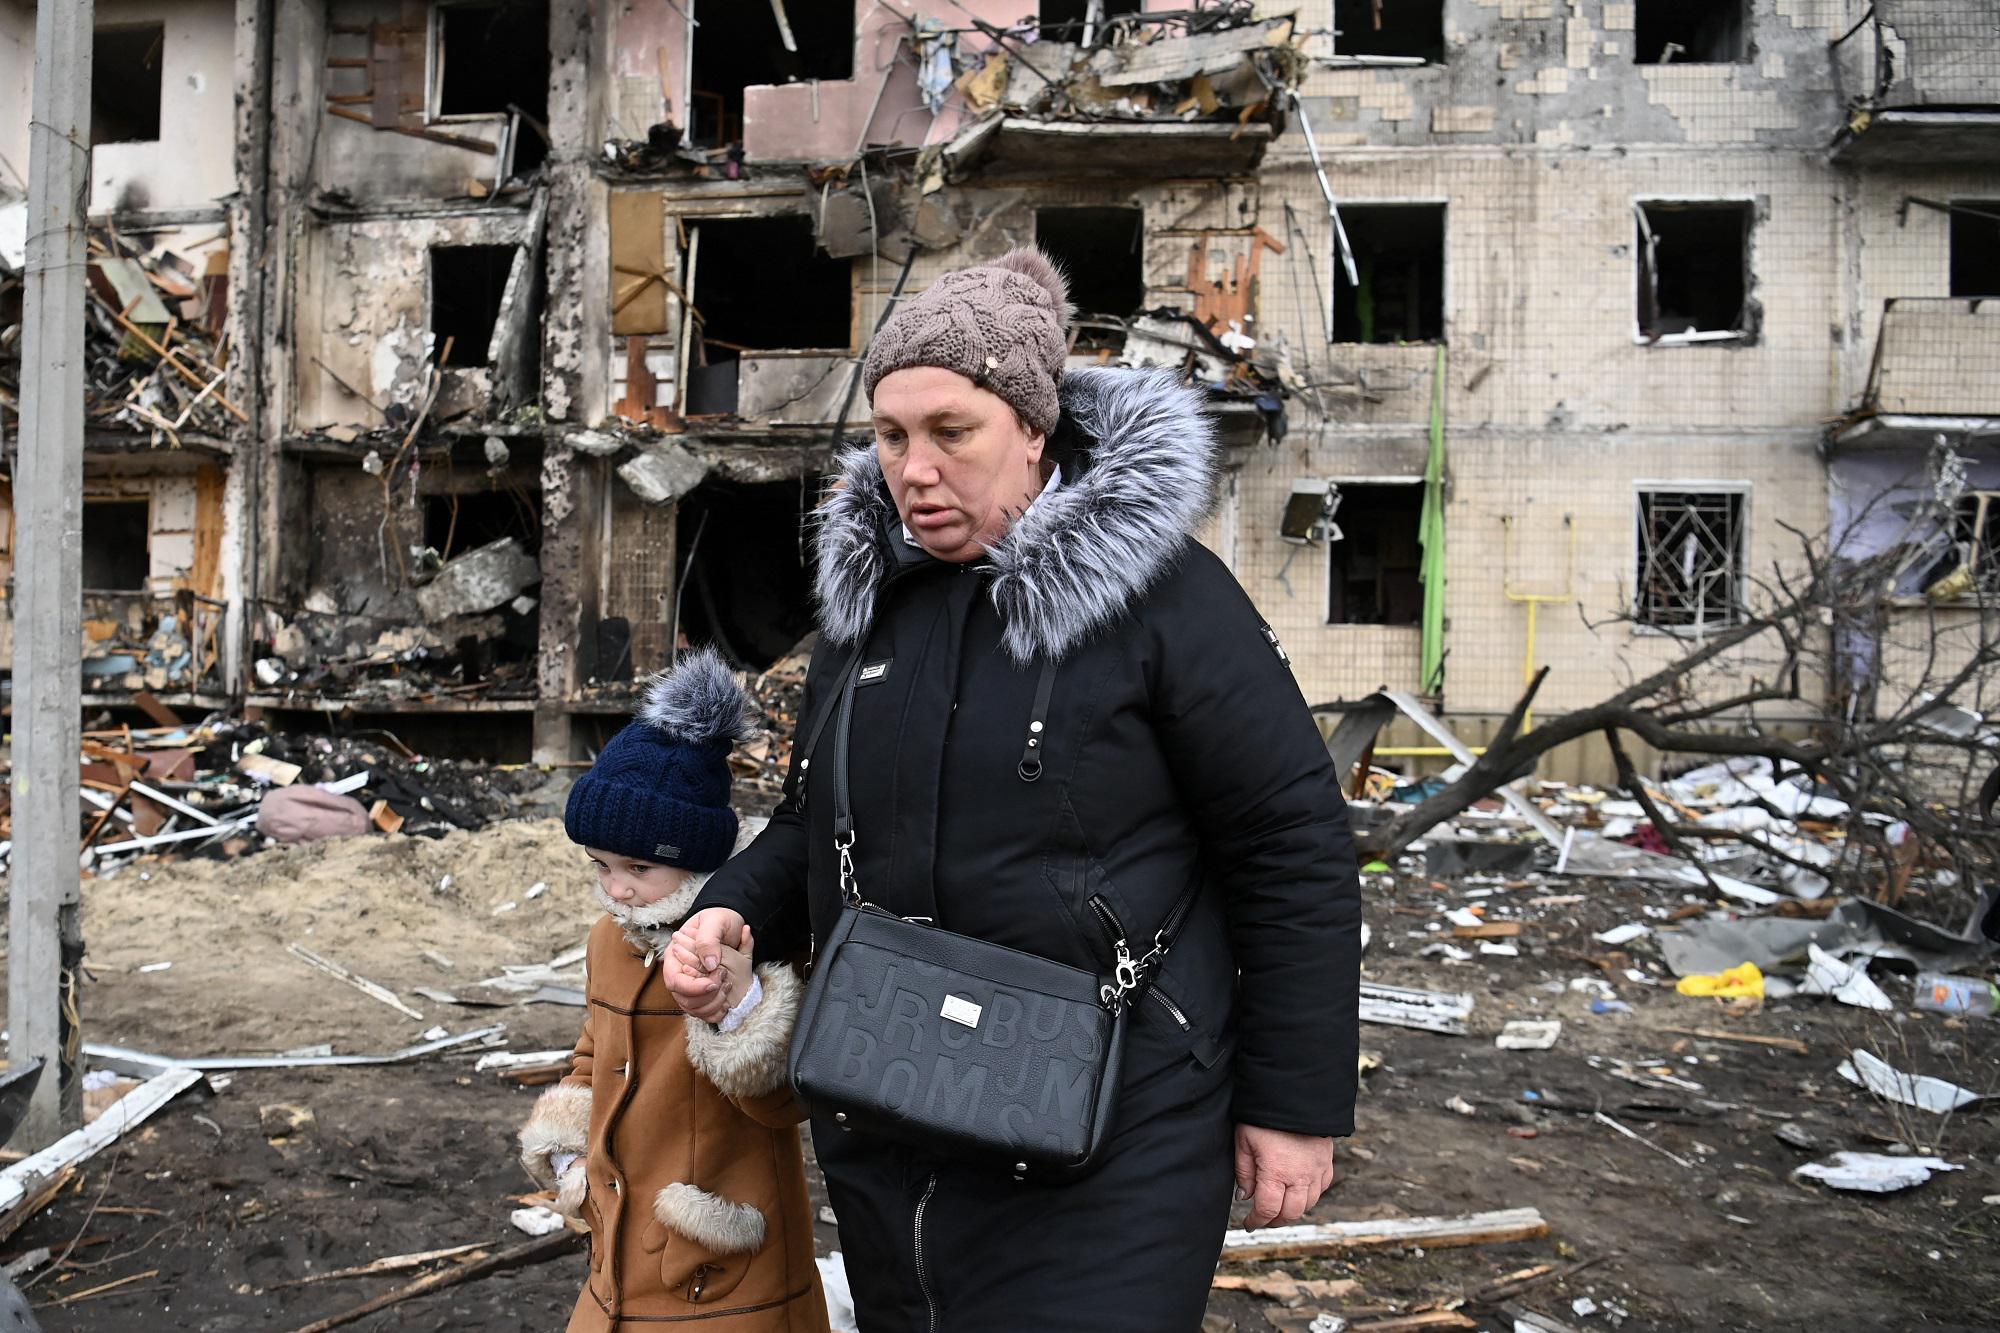 Orrore! La Russia promuove l'adozione forzata di bambini ucraini